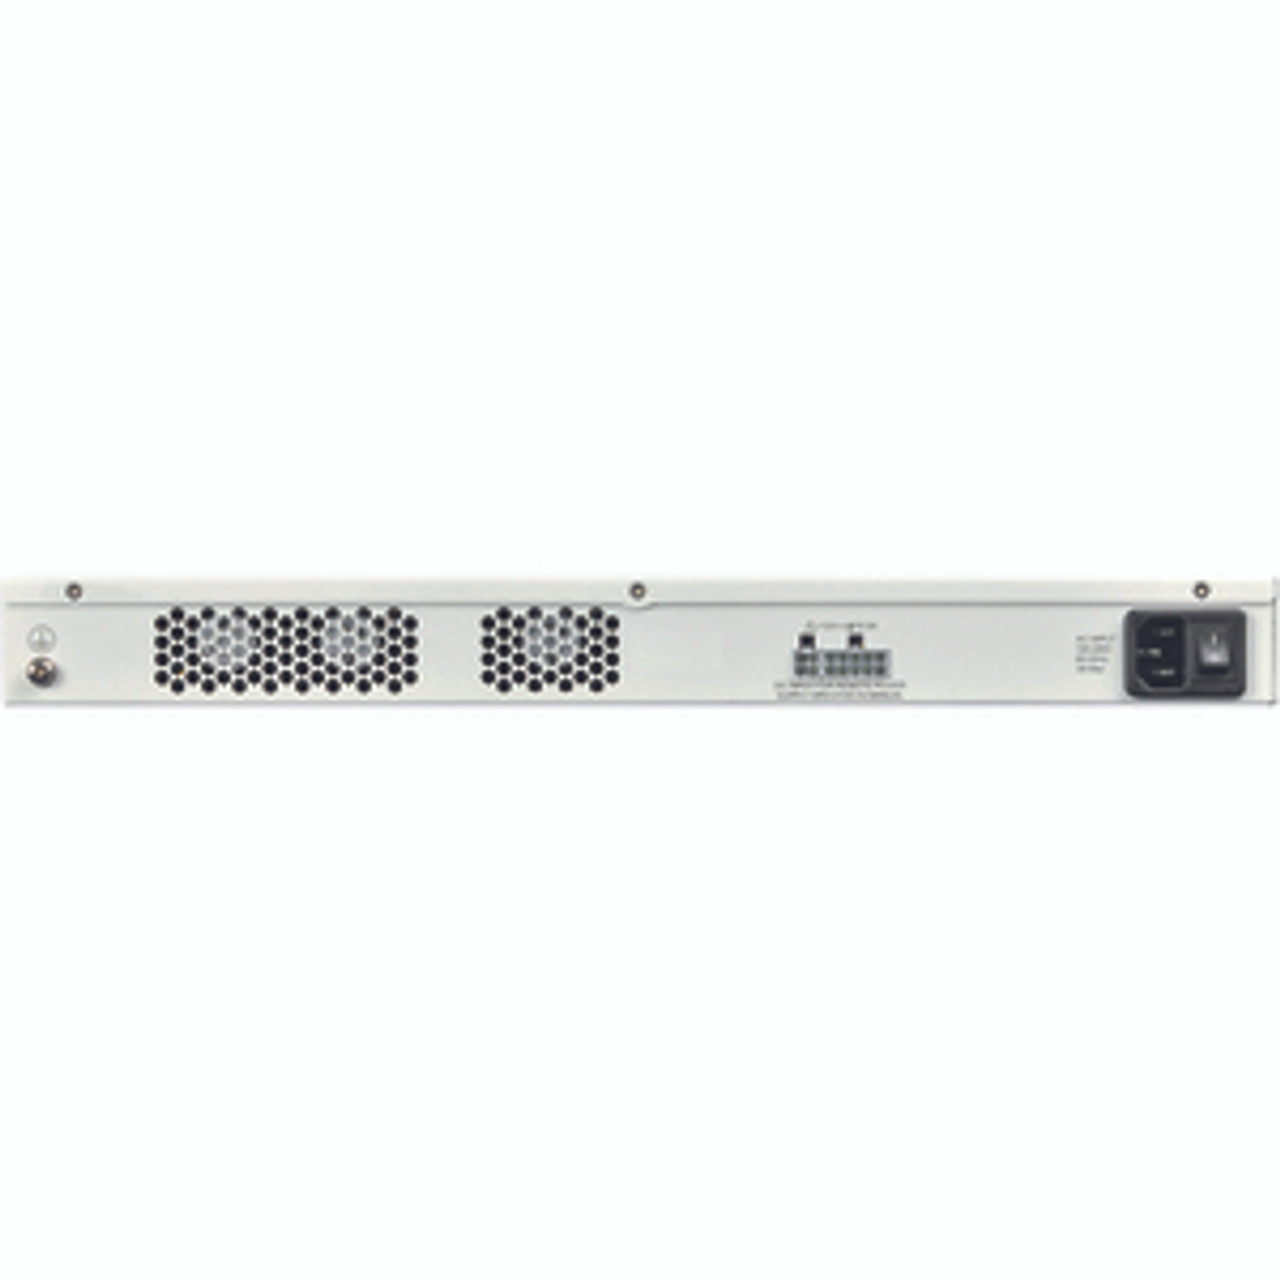 Fortinet FortiGate 200D-POE Network Security/Firewall Appliance - 18 Port - 1000Base-T, 1000Base-X - Gigabit Ethernet - 10 x RJ-45 - 2 Total Expansion Slots - 1U - Rack-mountable FG UTM PROTECTION